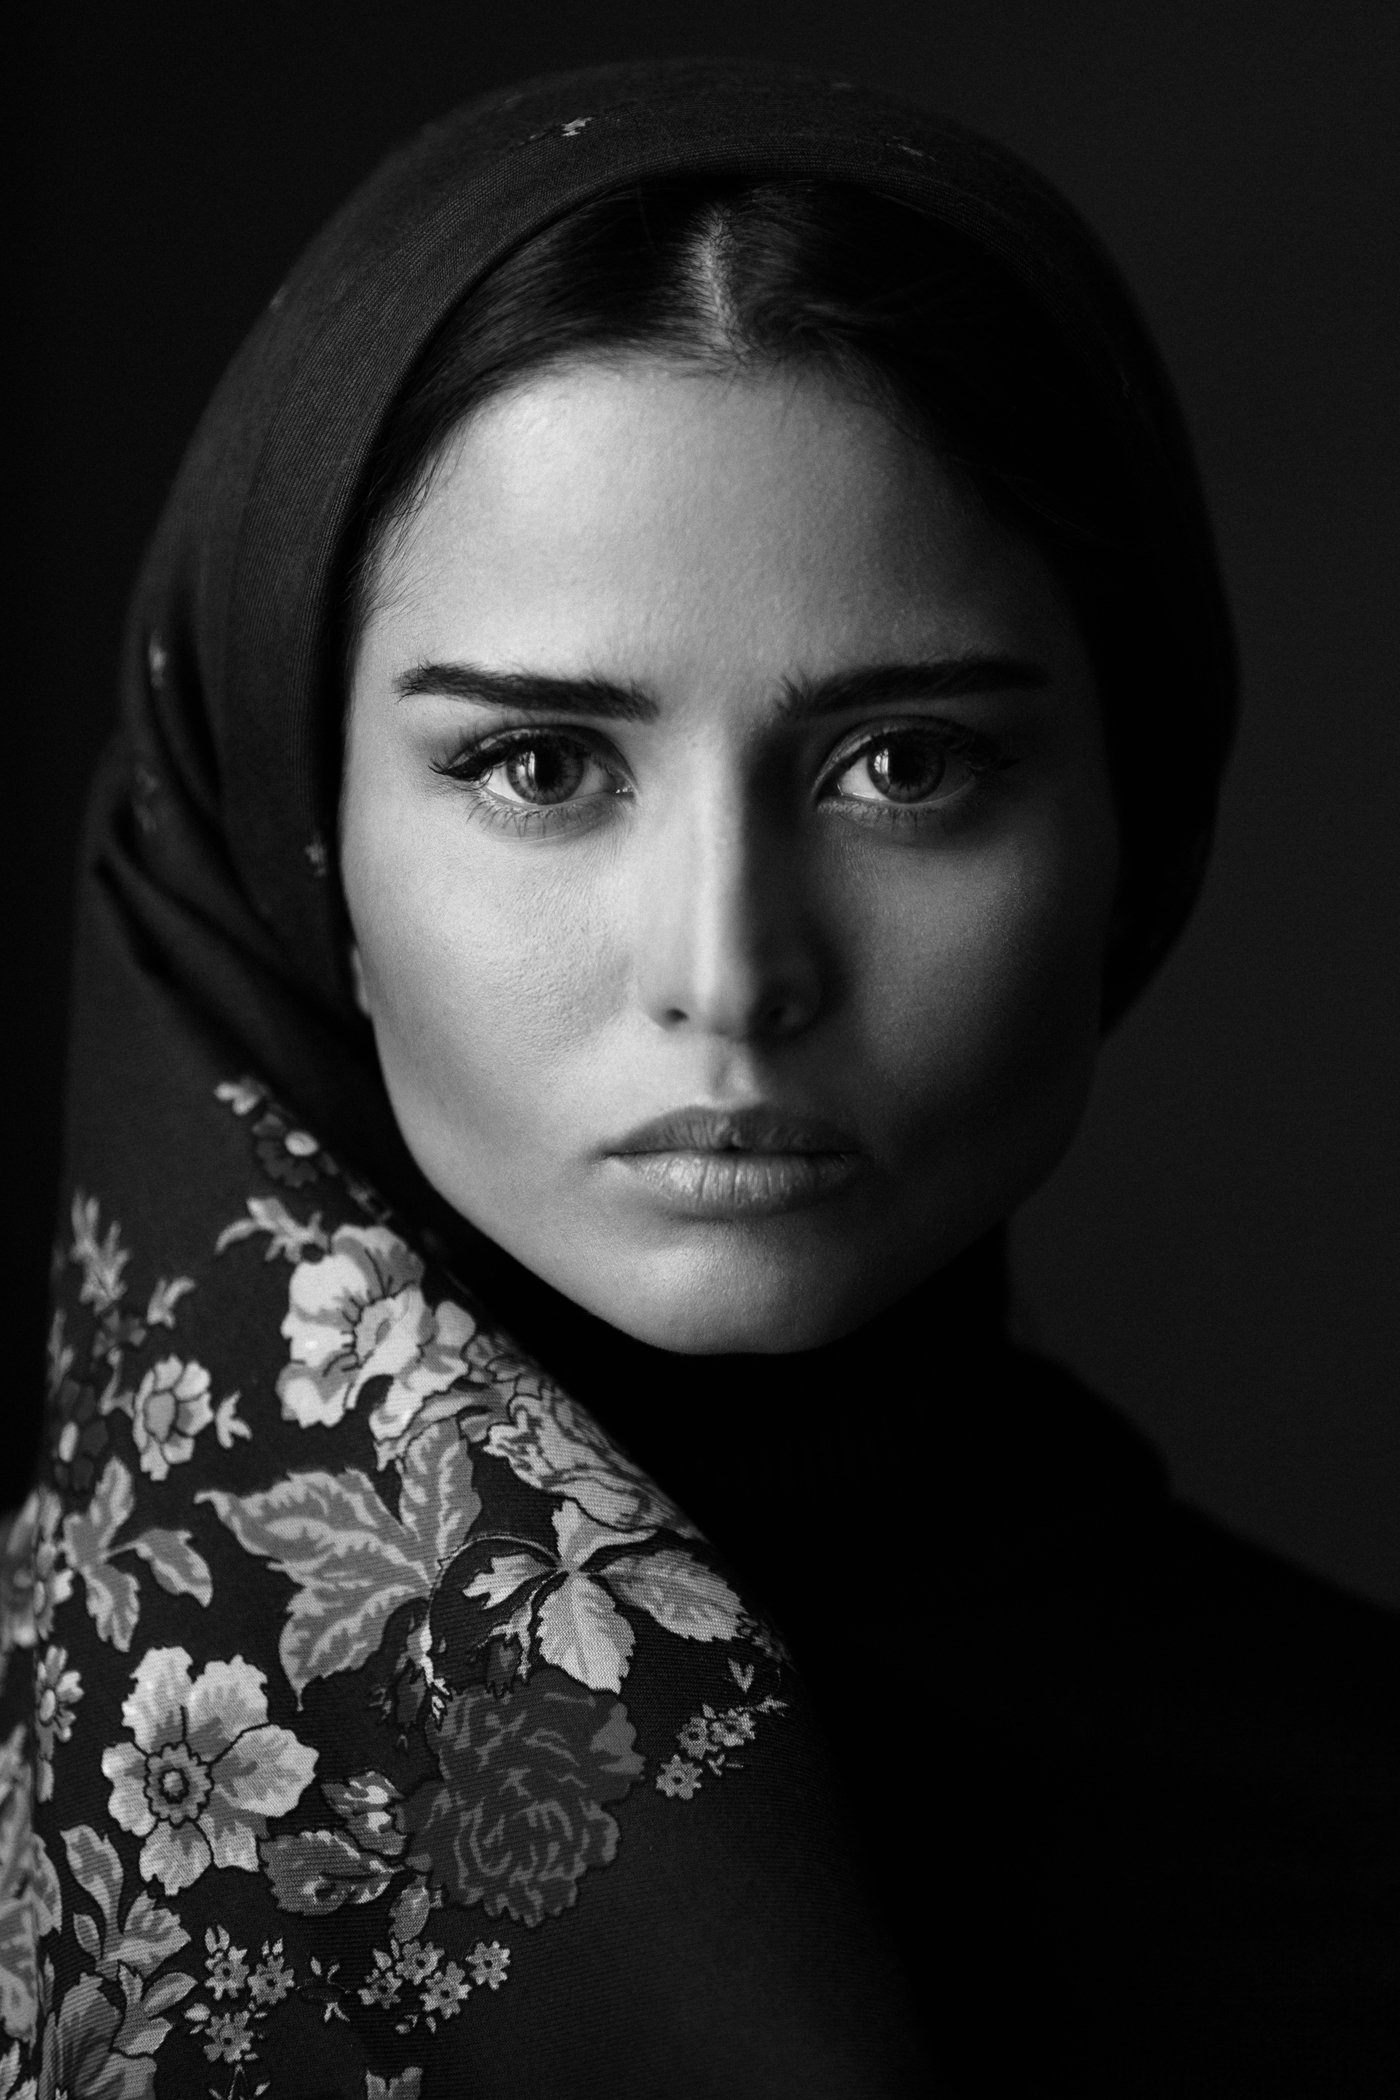 portrait bw mono babakfatholahi eyes headshoot iran iranian persiangirl girl soul folk, Babak Fatholahi